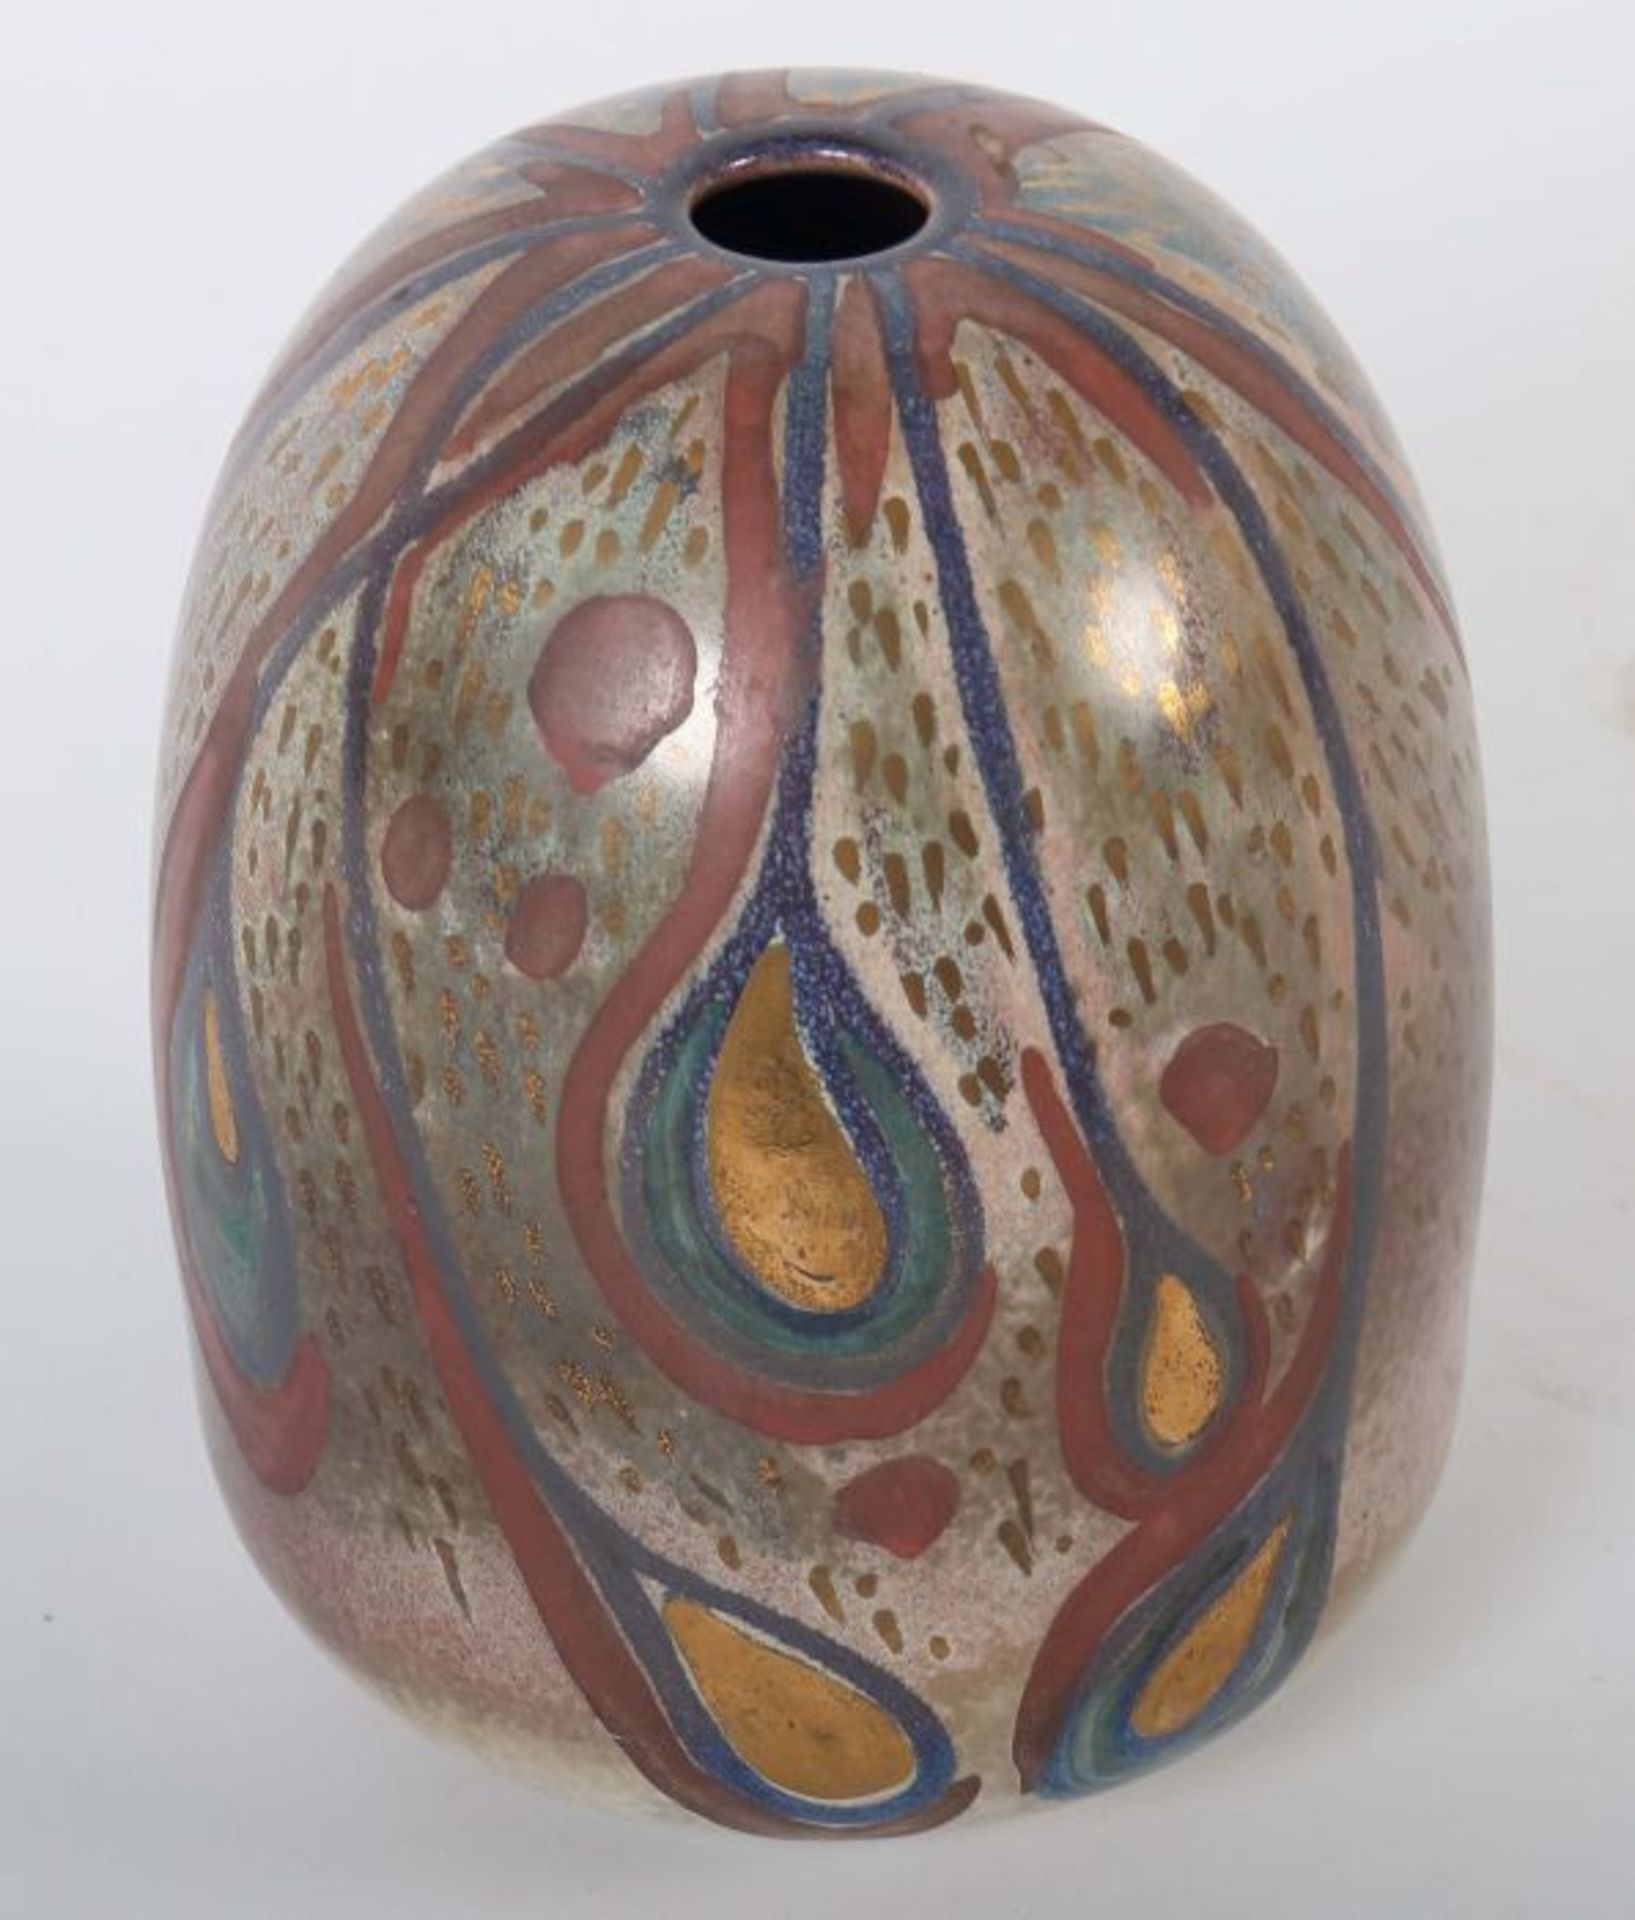 Vase Wohl 2. Hälfte 20. Jh., bräunlicher Scherben, das Dekor tropfenförmig in Rostrot, Gold, Blau - Bild 3 aus 4